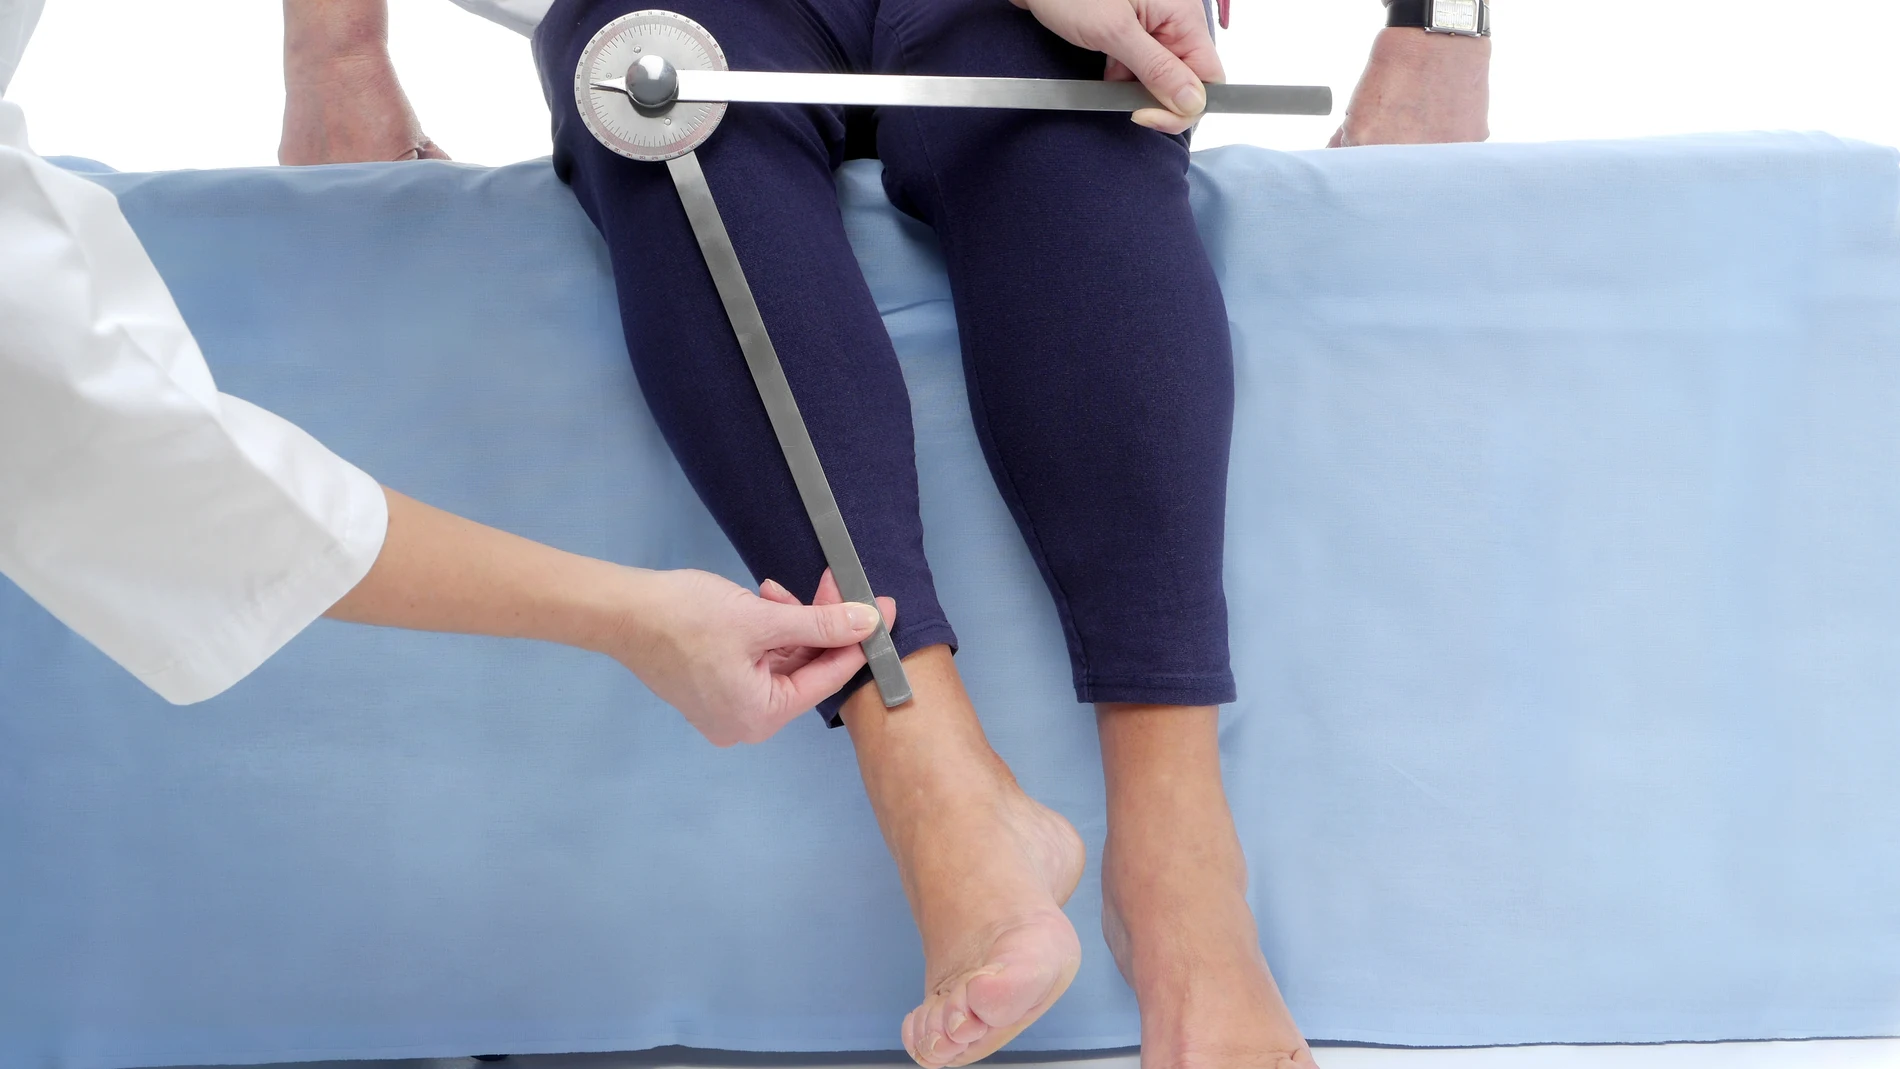 Fisioterapeuta midiendo el rango de movimiento activo de la extremidad inferior de una paciente mayor usando un goniómetro manual